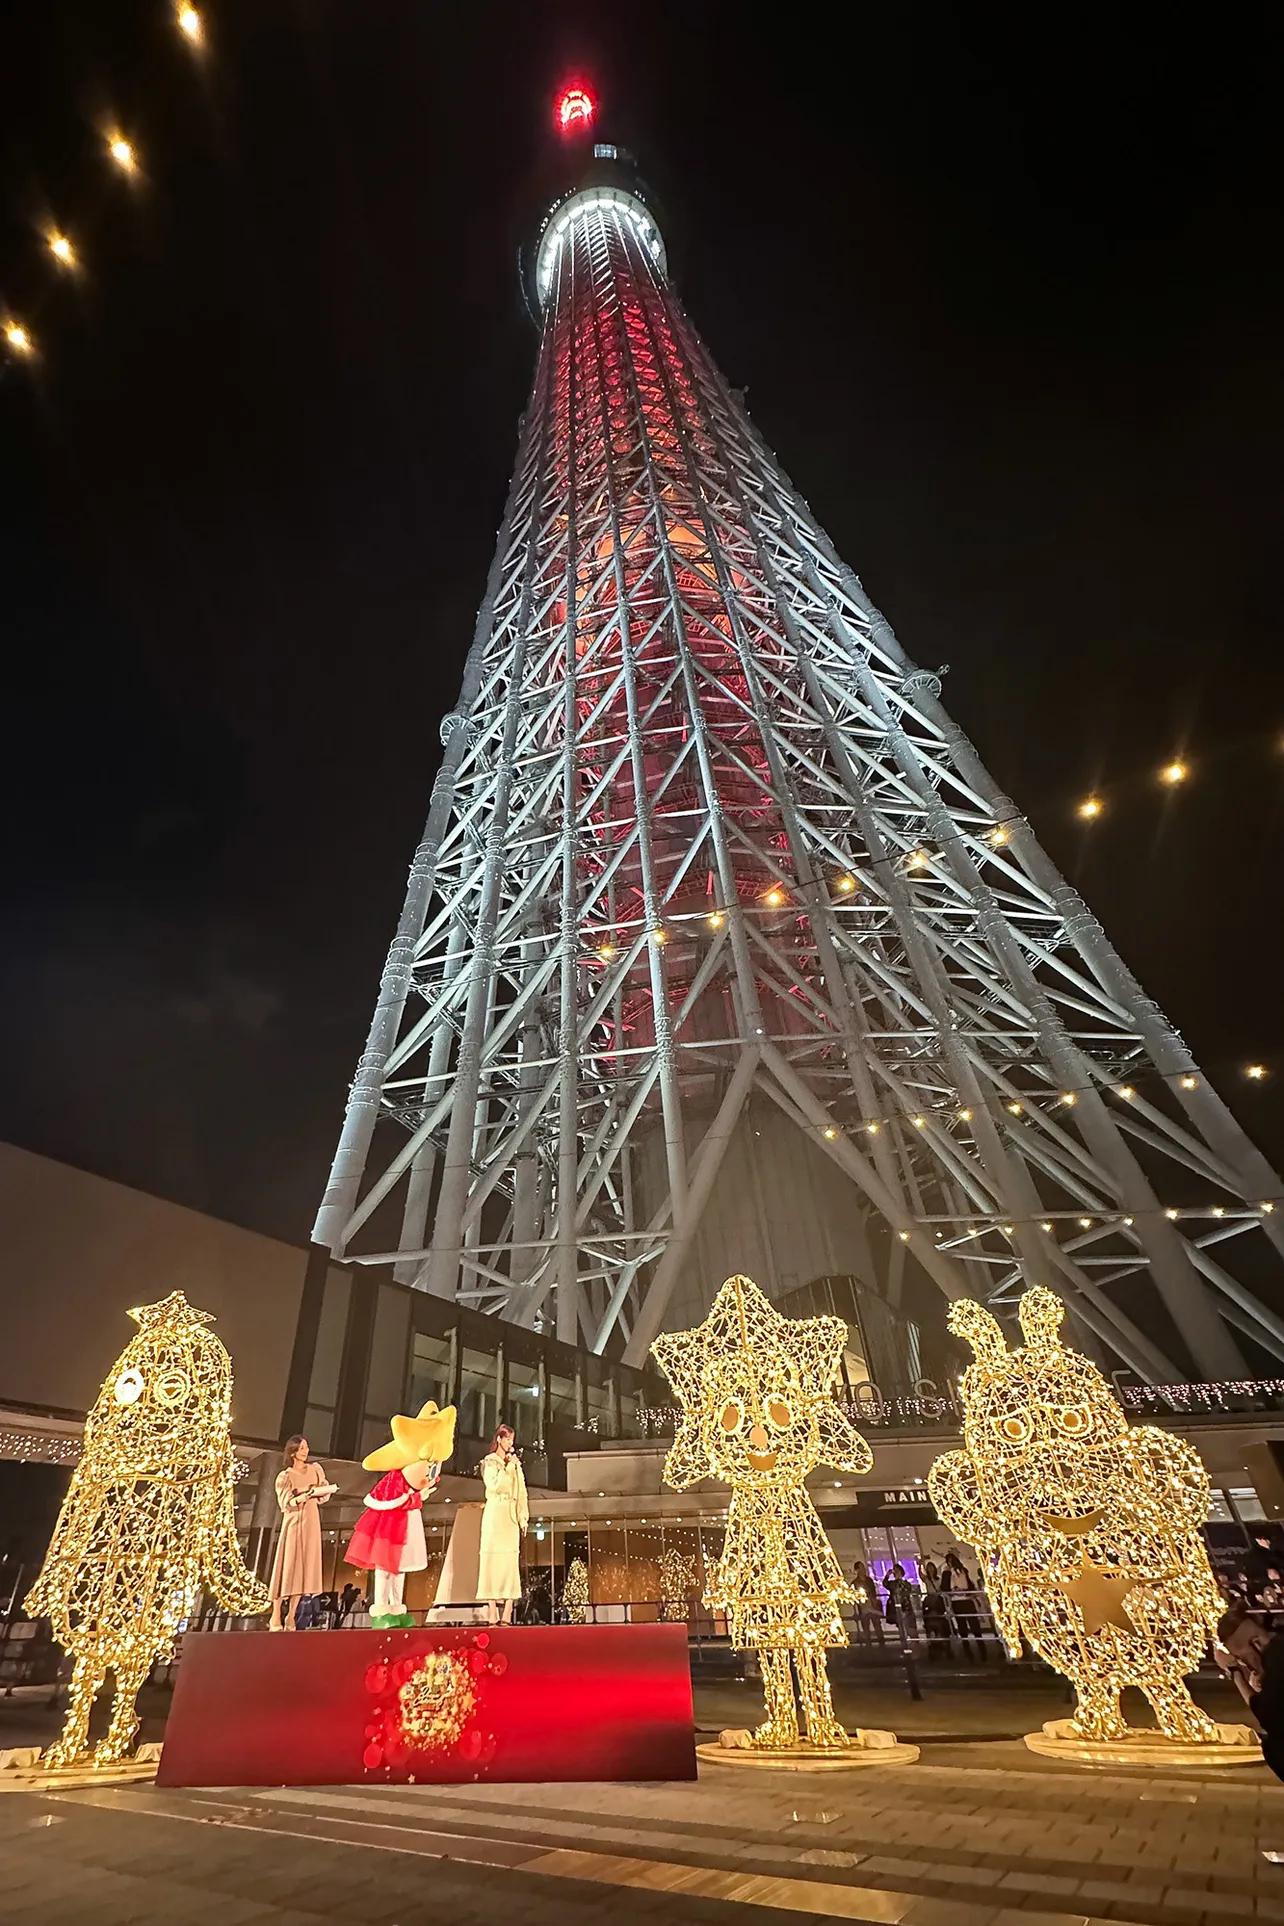 生見愛瑠が東京スカイツリータウンのイルミネーション点灯式に登壇